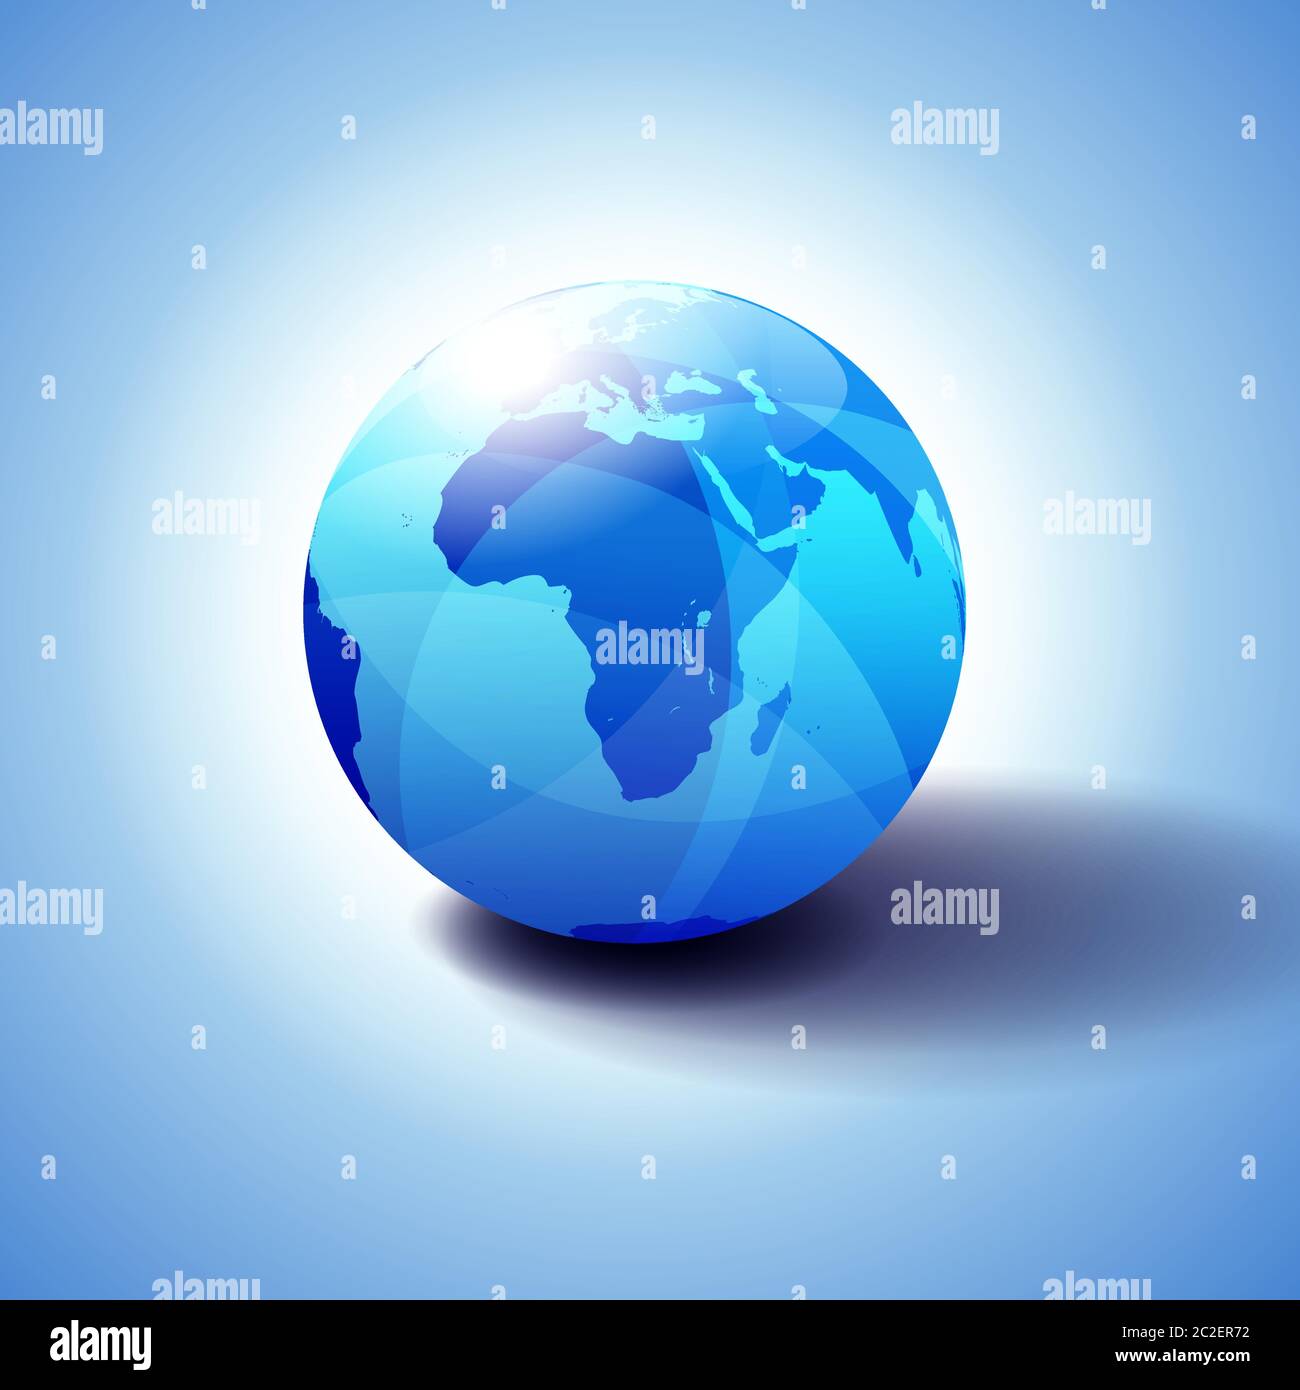 Africa, Arabia sfondo con l'icona Globe illustrazione 3D, lucida, sfera lucida con la mappa globale in blu sottile per una sensazione di trasparenza. Illustrazione Vettoriale